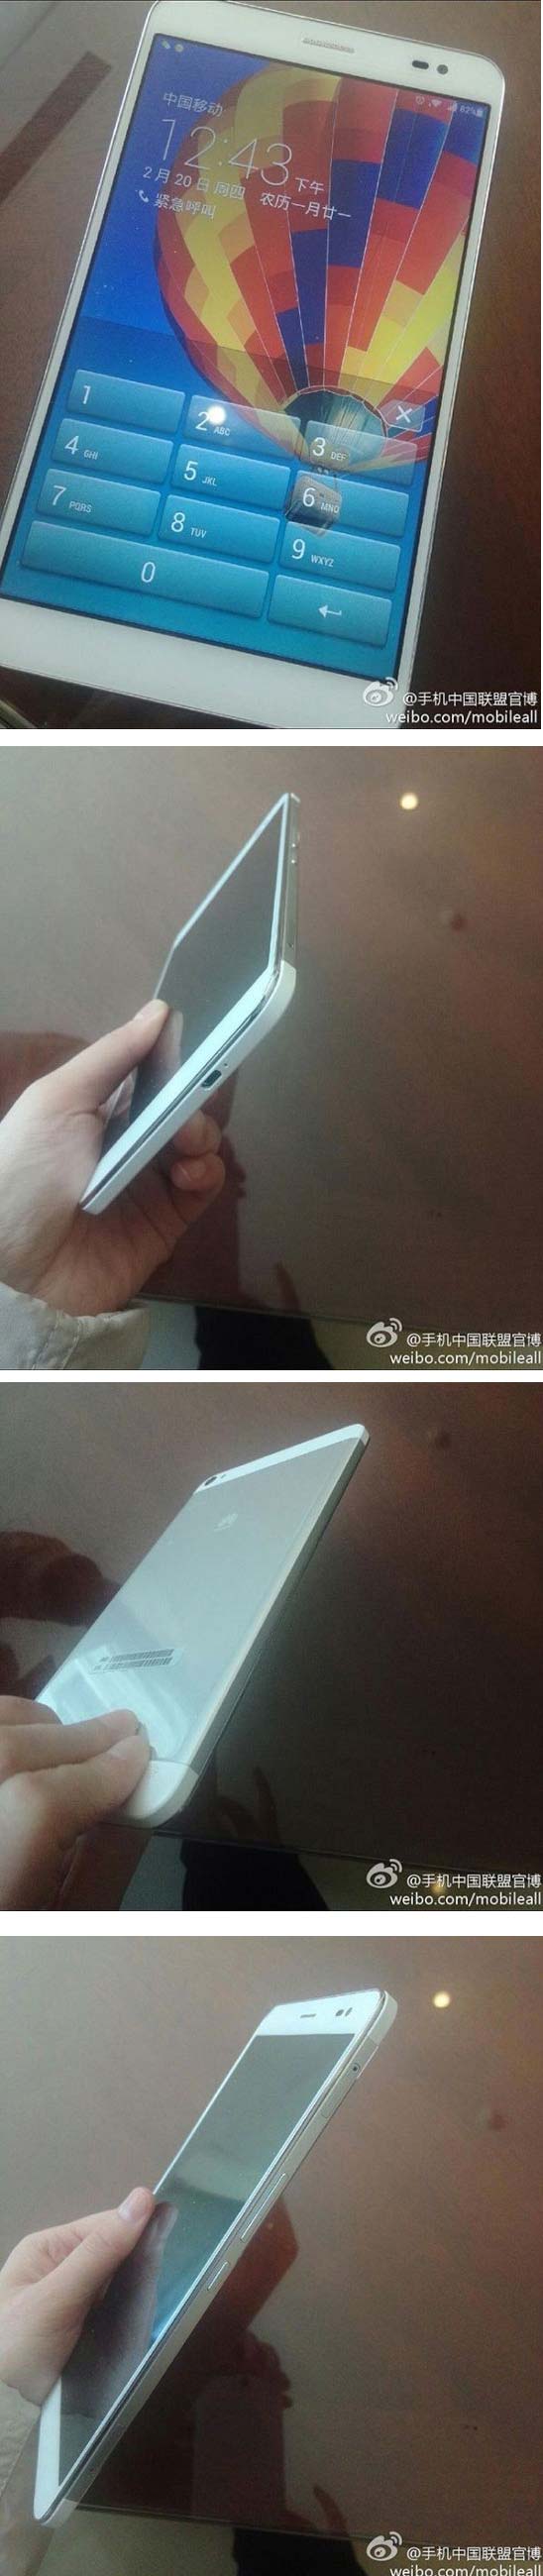 На фото показан планшет Huawei MediaPad X1